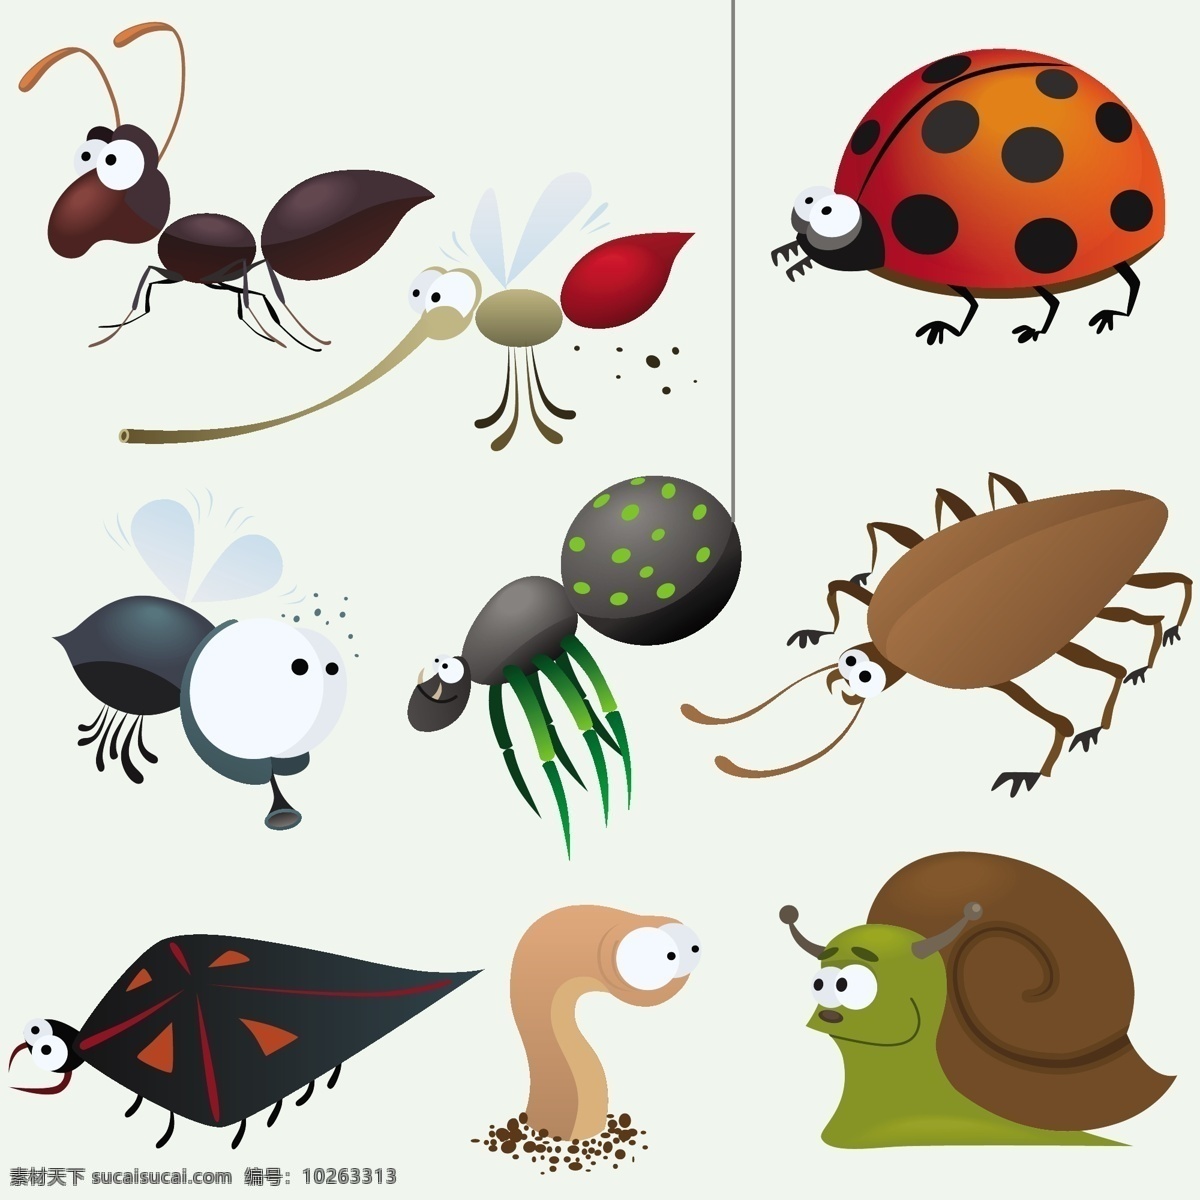 各种各样 动物 卡通 可爱 卡通生物 昆虫 蚯蚓 蜗牛 瓢虫 蚂蚁 苍蝇 蚊子 陆地动物 生物世界 矢量素材 白色